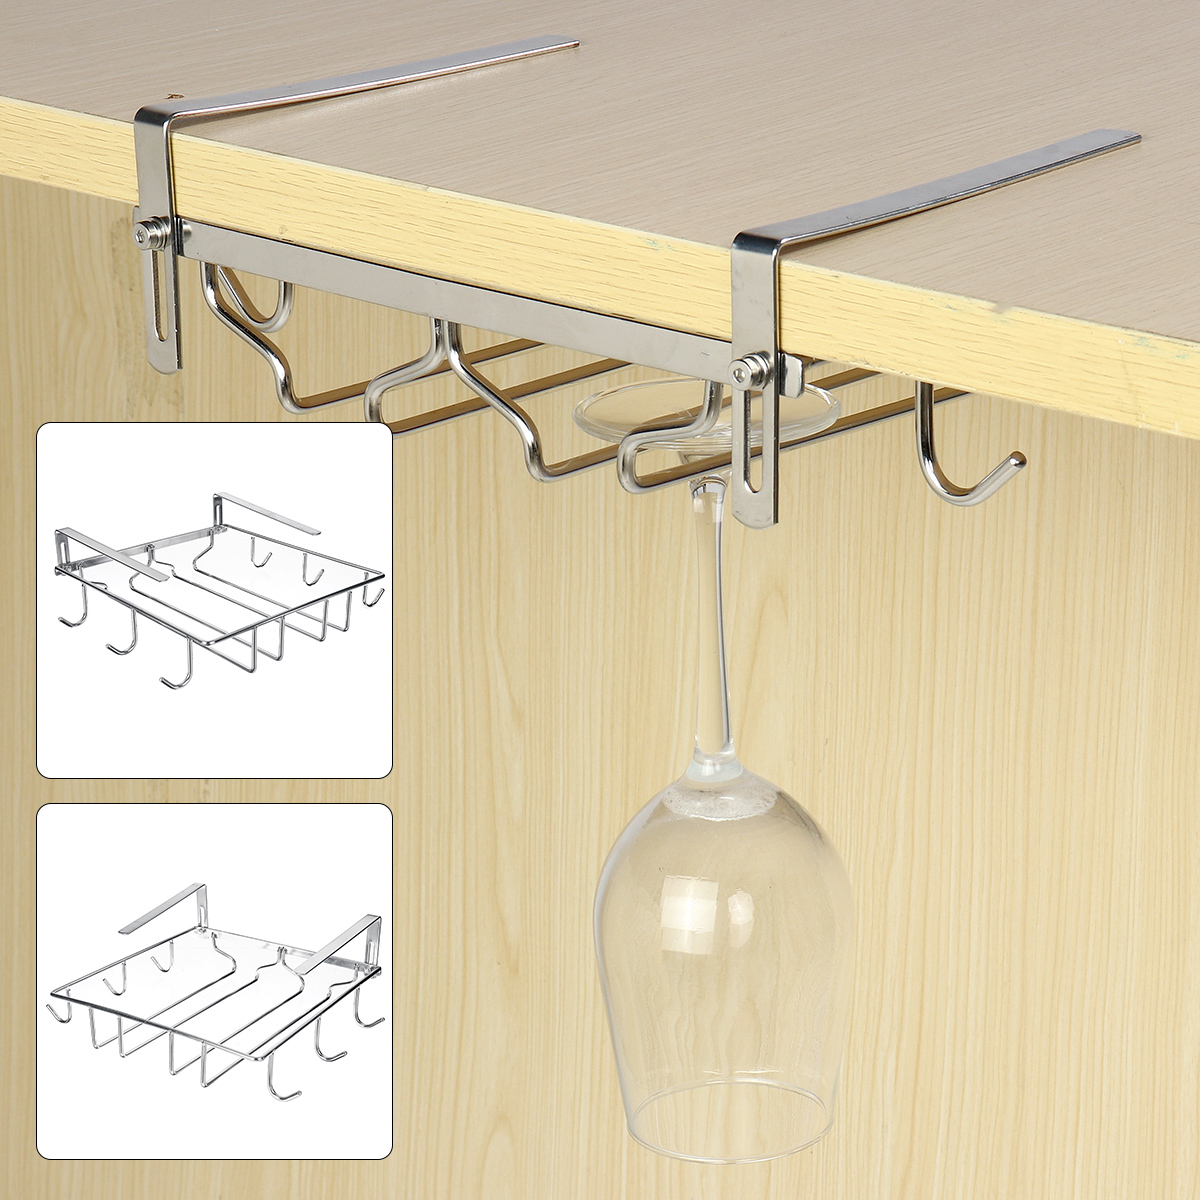 Mug-Holder-Coffee-Tea-Cup-Rack-Storage-Kitchen-Under-Shelf-Cabinet-Hanger-1780359-7